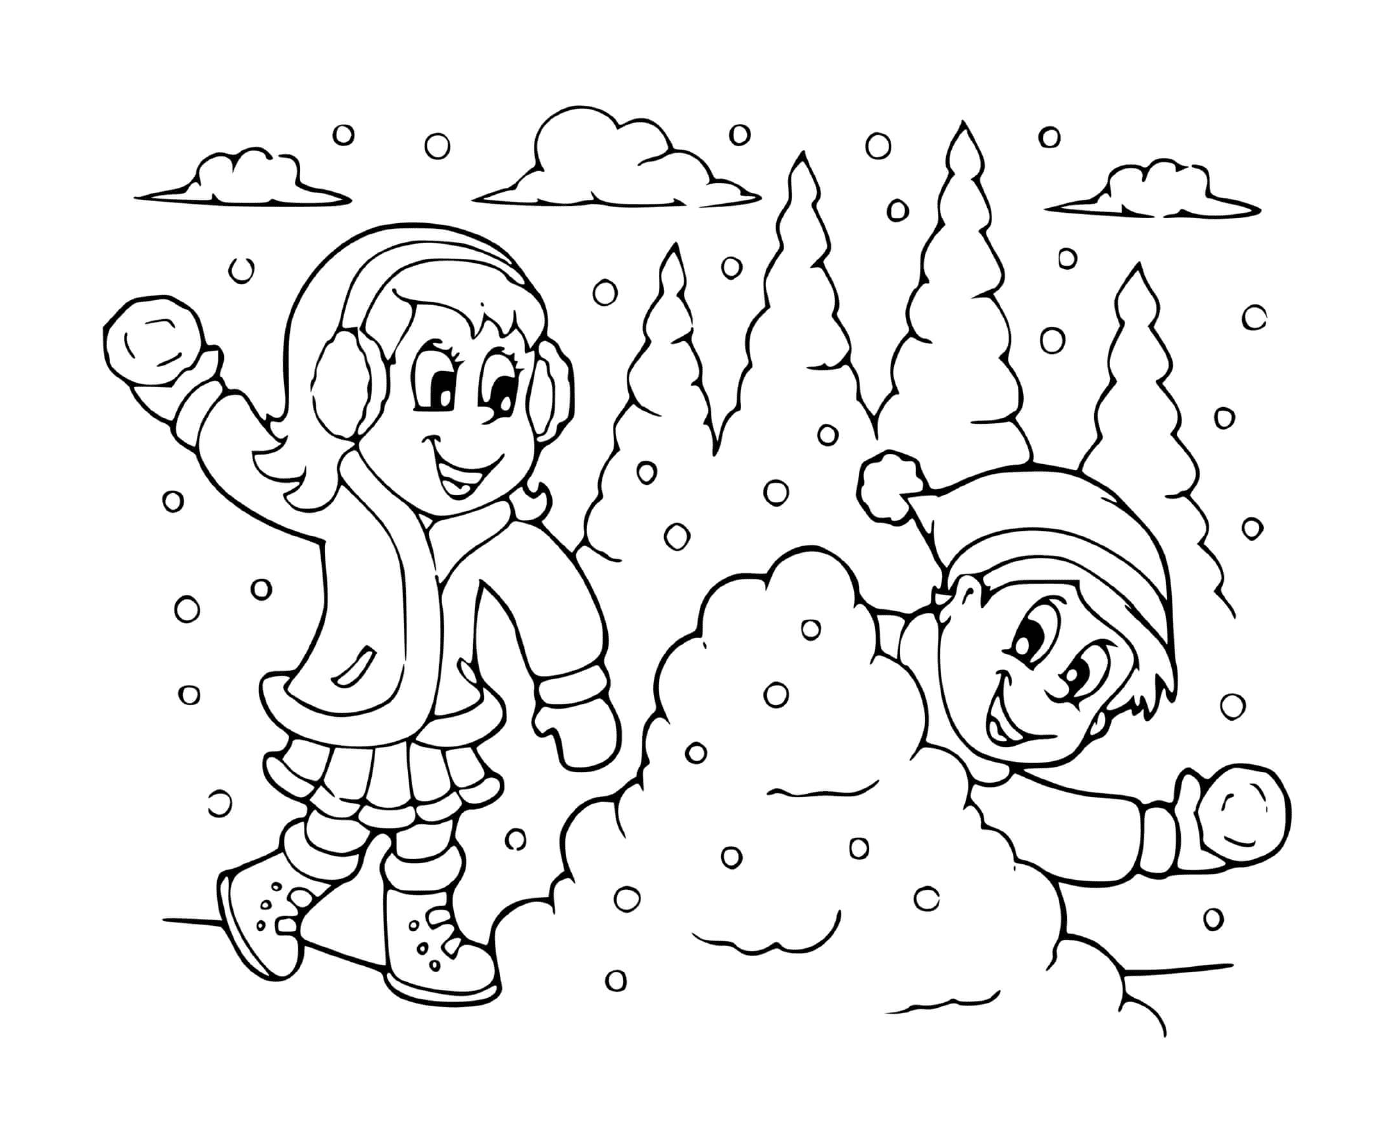  Battaglia di neve tra ragazza e ragazzo 